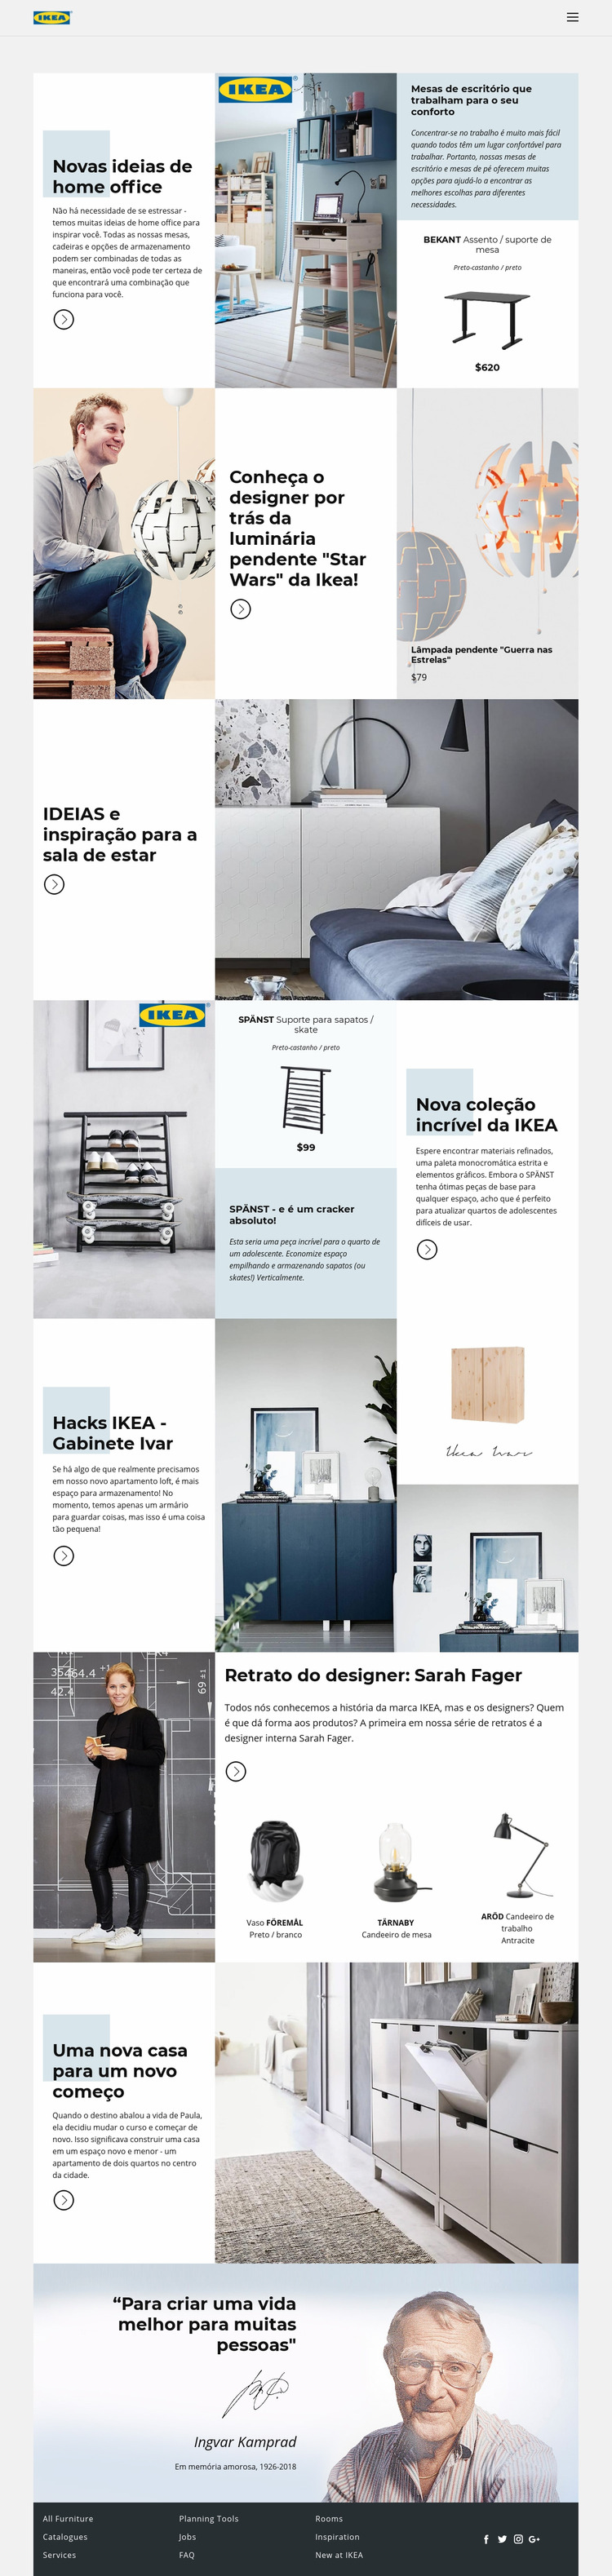 Inspiração da IKEA Template Joomla